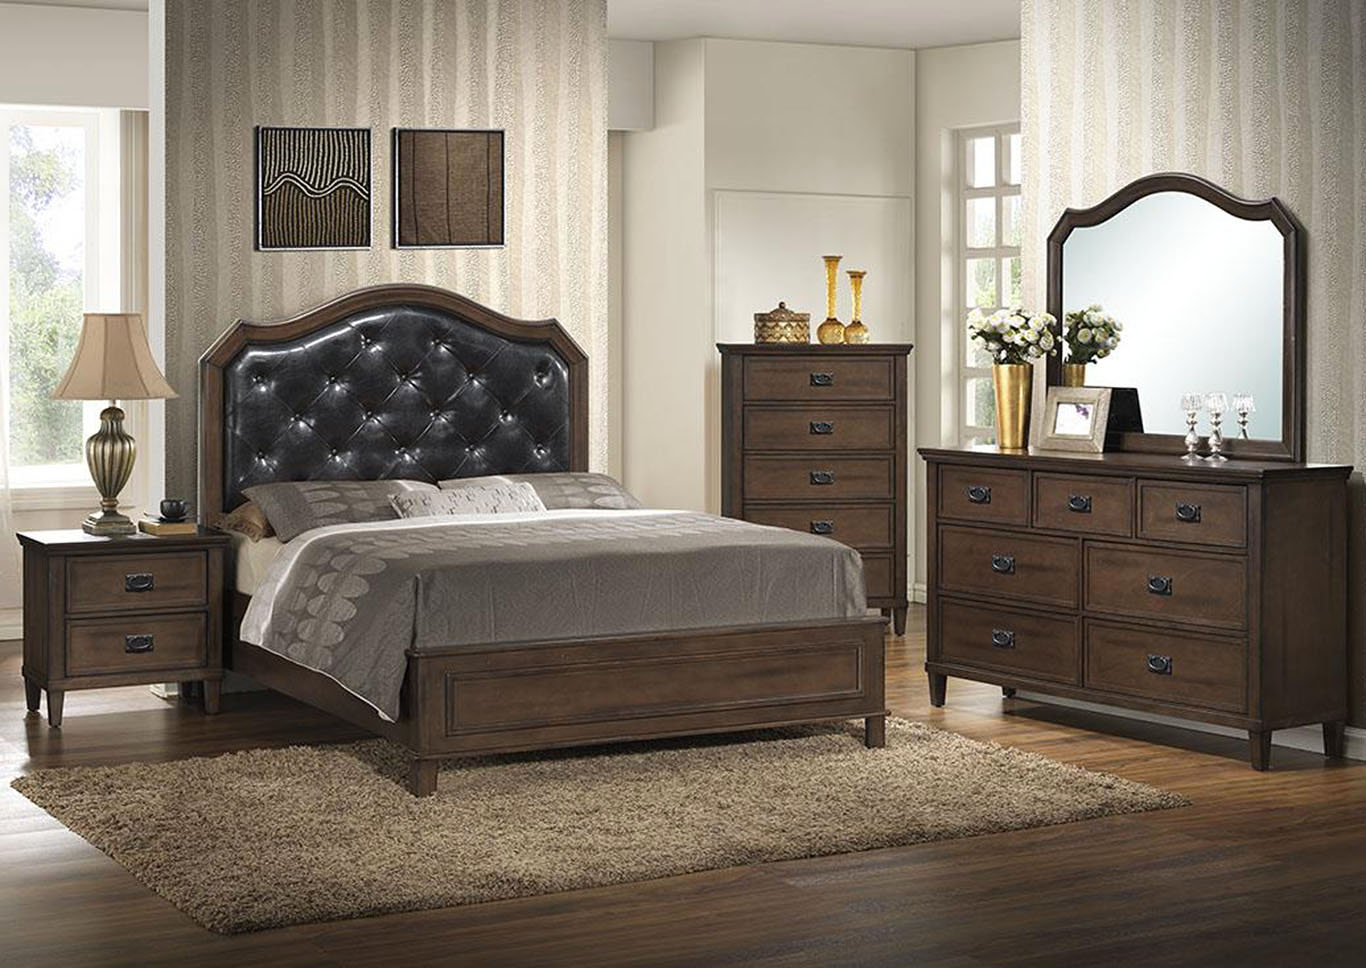 Brown Panel Queen 5 Piece Bedroom Set W/ Nightstand, Chest, Dresser & Mirror,Global Trading